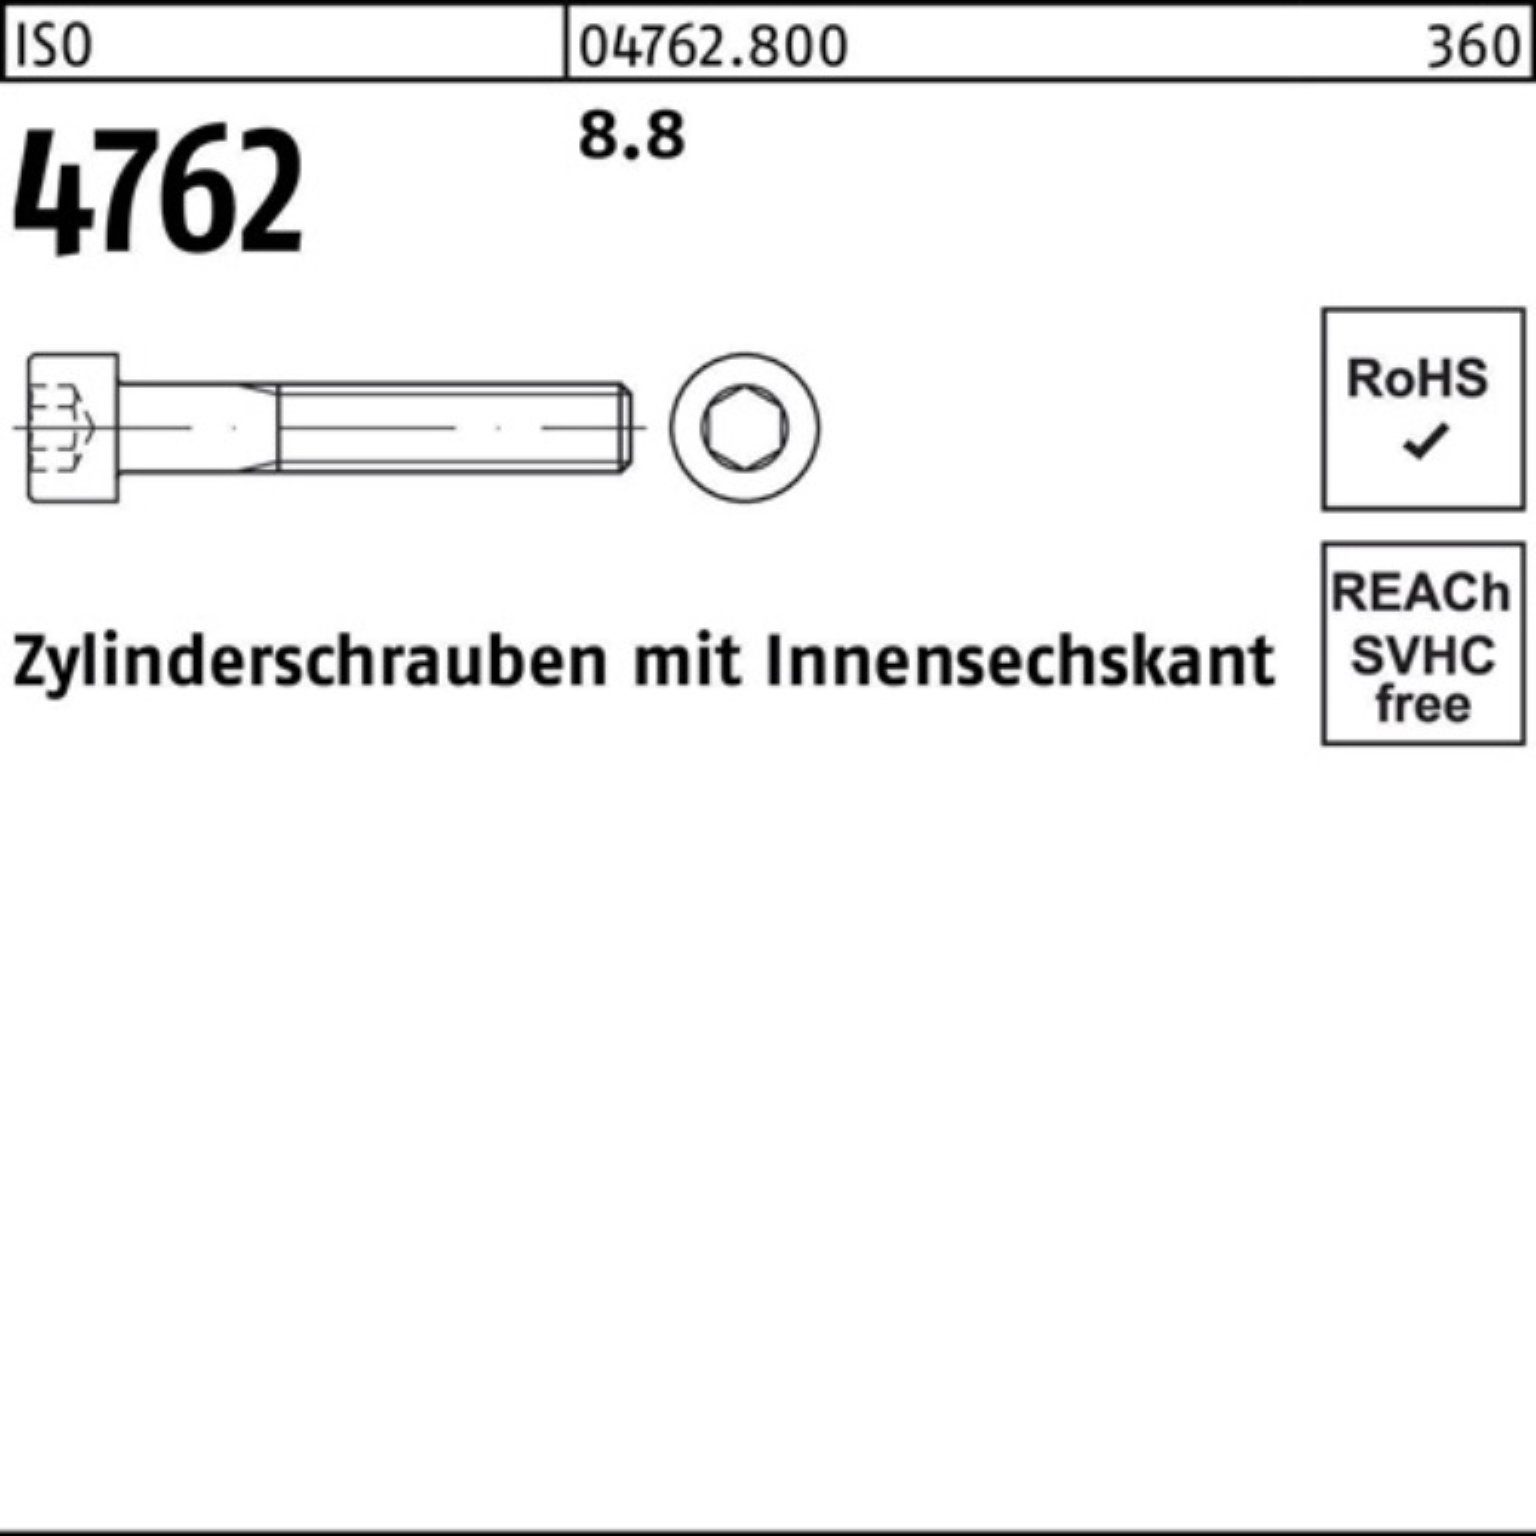 Zylinderschraube I 1 4762 8.8 330 Innen-6kt 100er Pack ISO Zylinderschraube M24x Reyher Stück